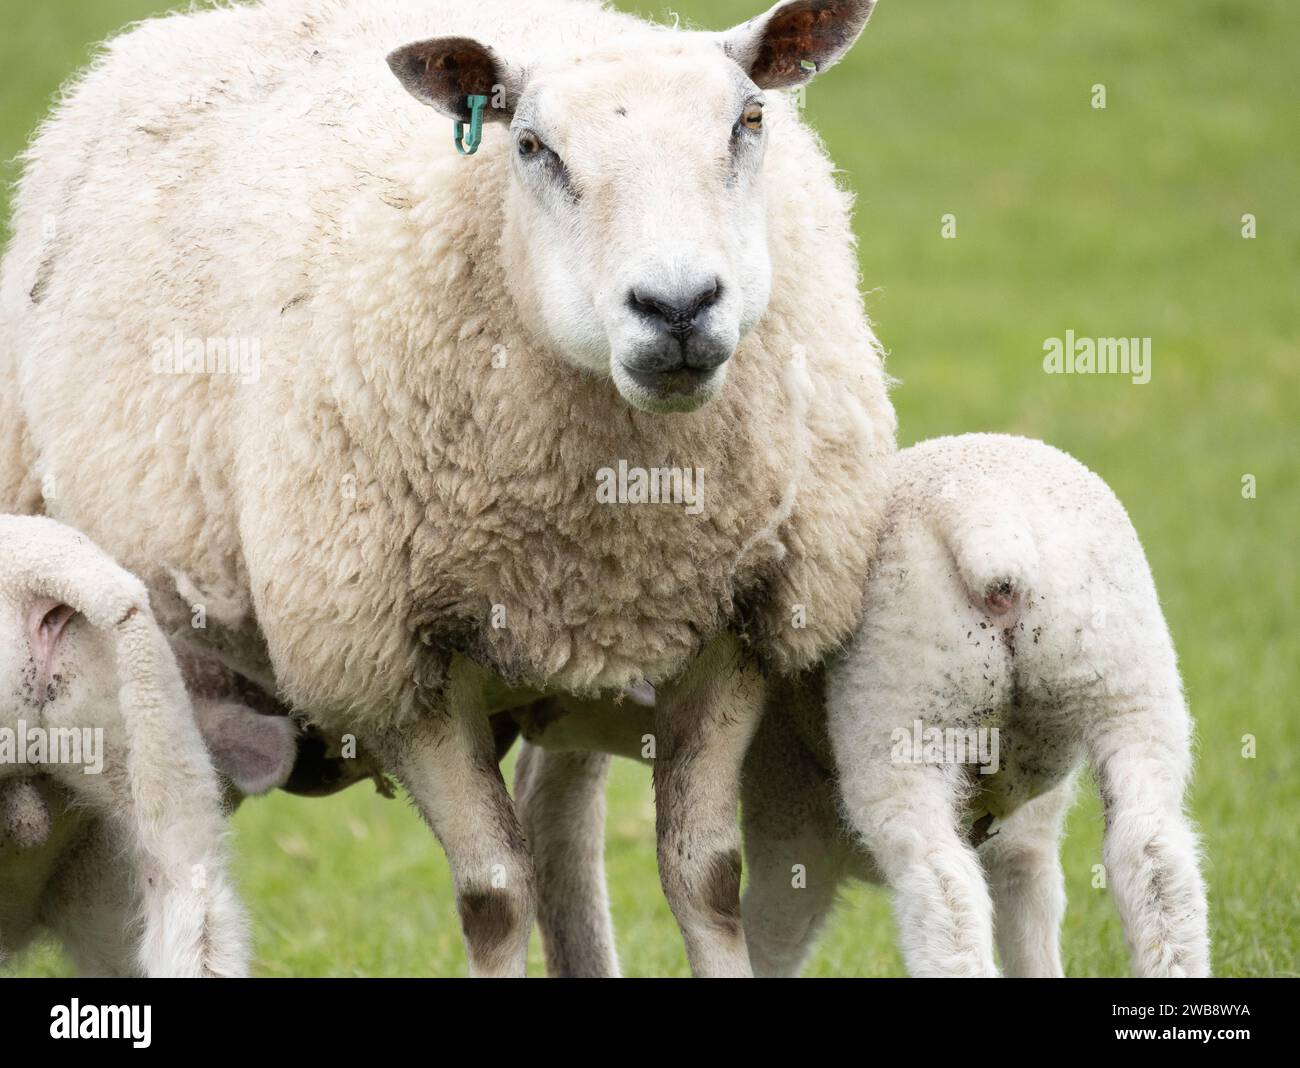 Schaf ein weibliches Schaf mit zwei Lämmern, die vor grünem Hintergrund füttern Stockfoto